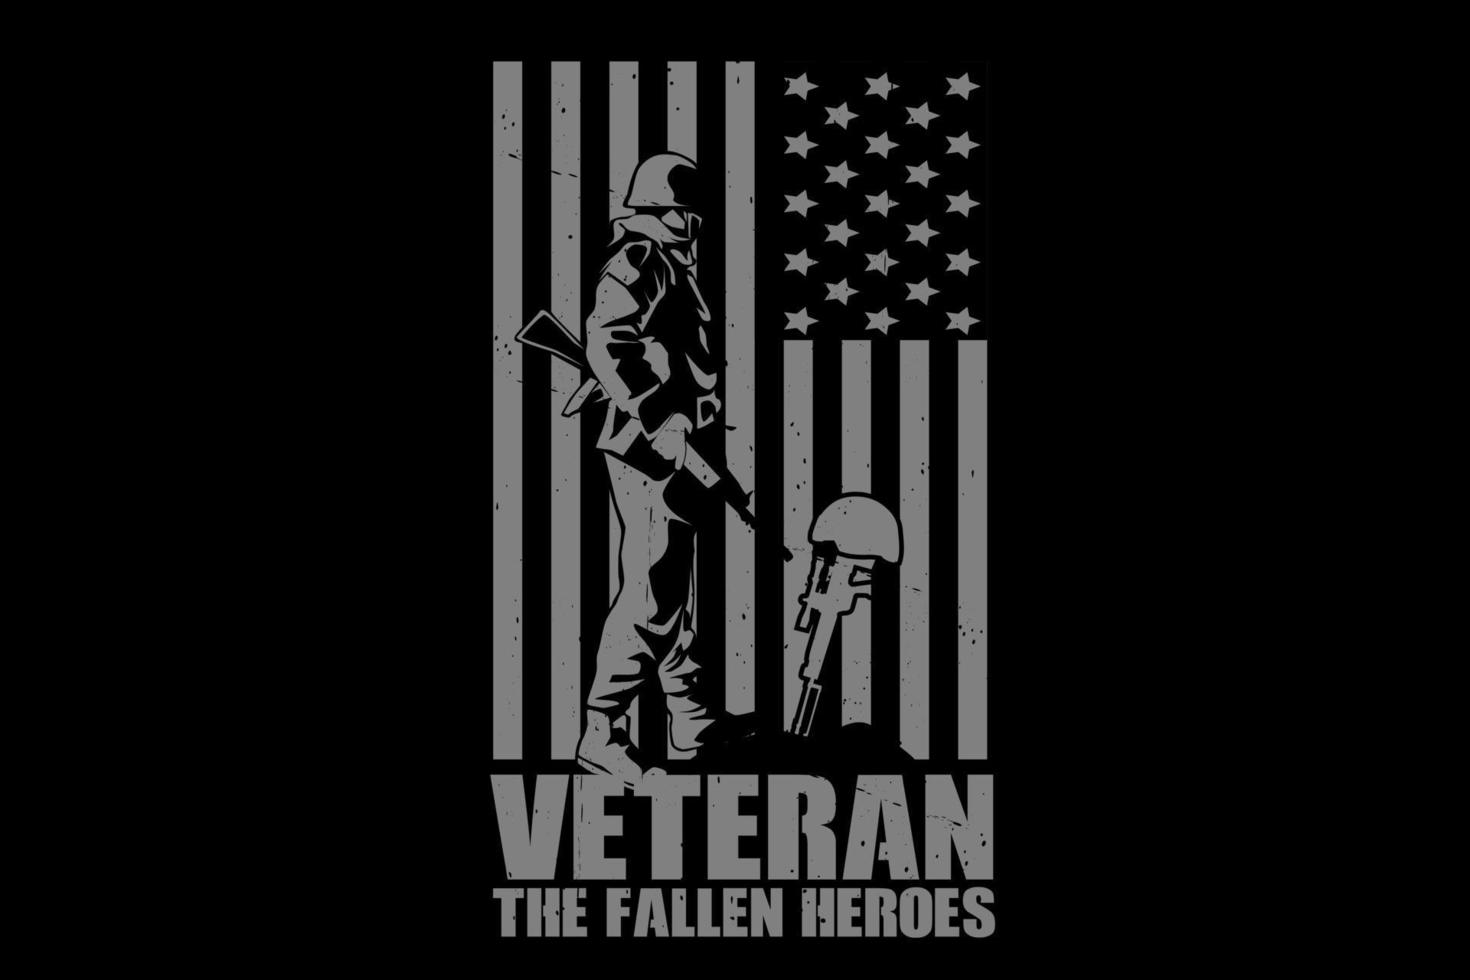 Veteran the fallen heroes silhouette design vector